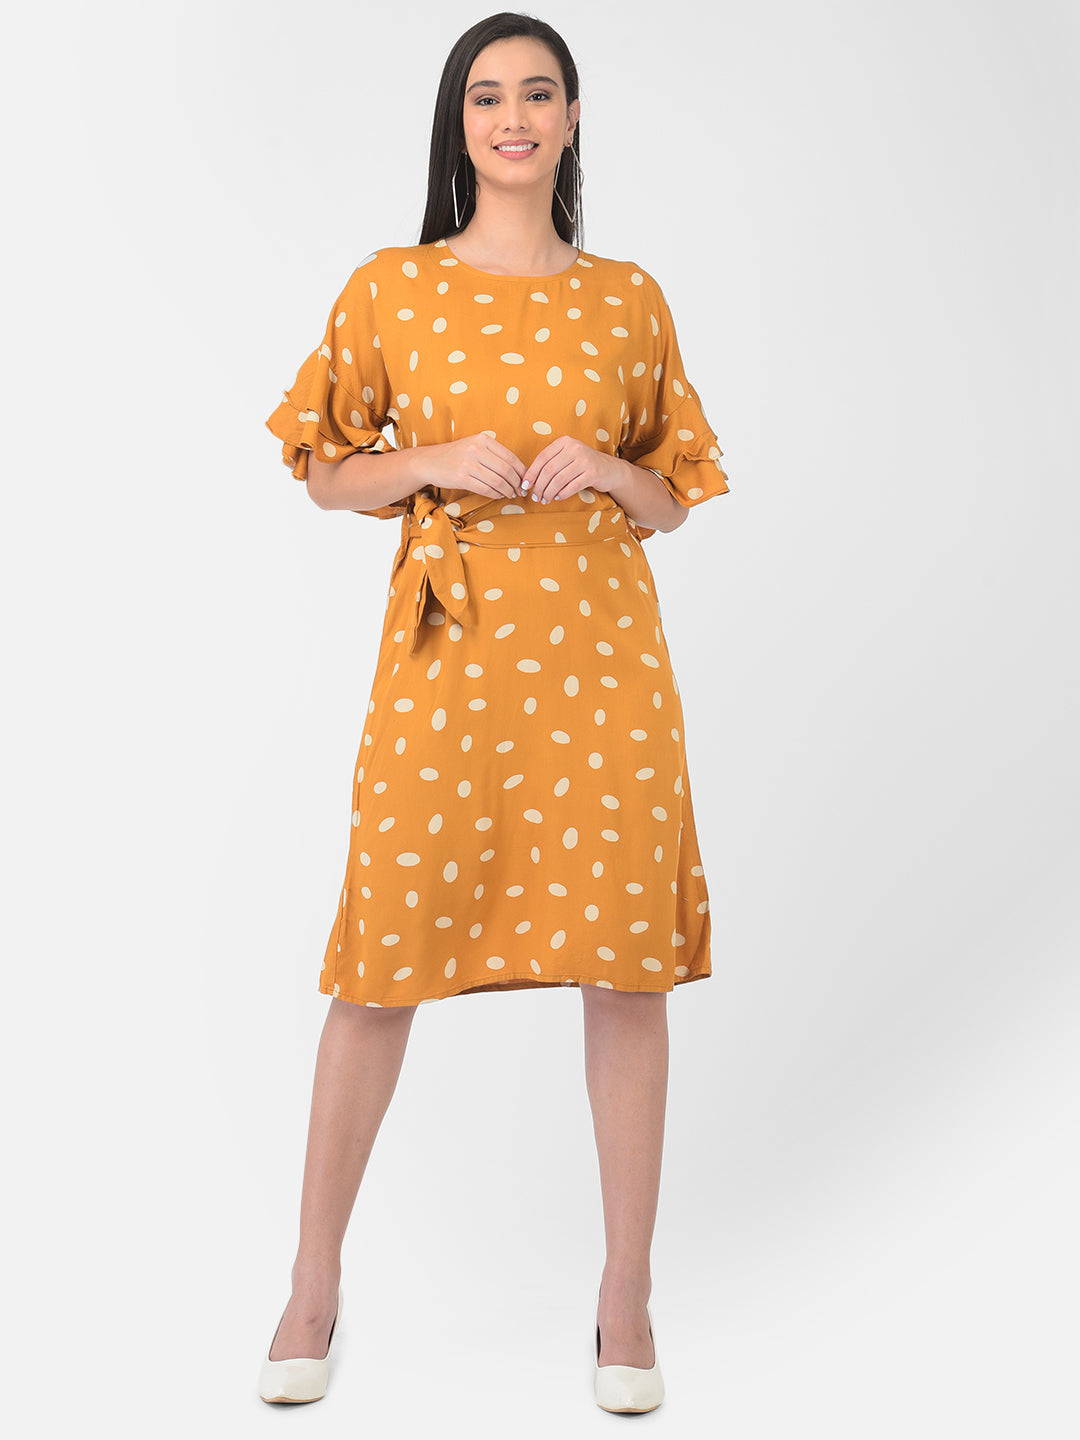 Orange Polka Dot Dress - Women Dresses